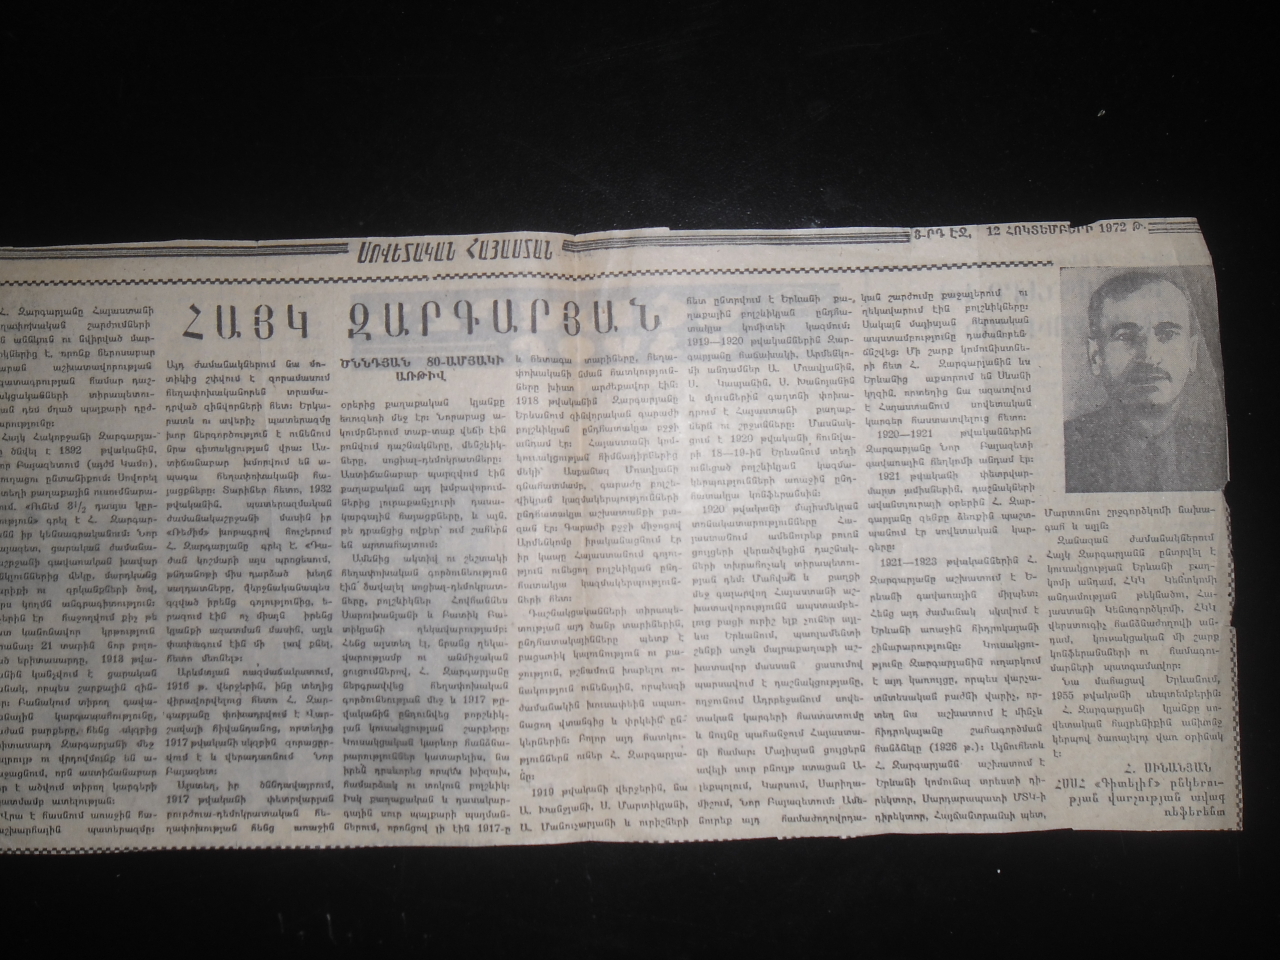 Սովետական Հայաստան ՝ Հայկ Զարգարյան ( Մայիսյան ապստամբության ակտիվ գործիչ) ծննդյան 80-ամյակի առթիվ